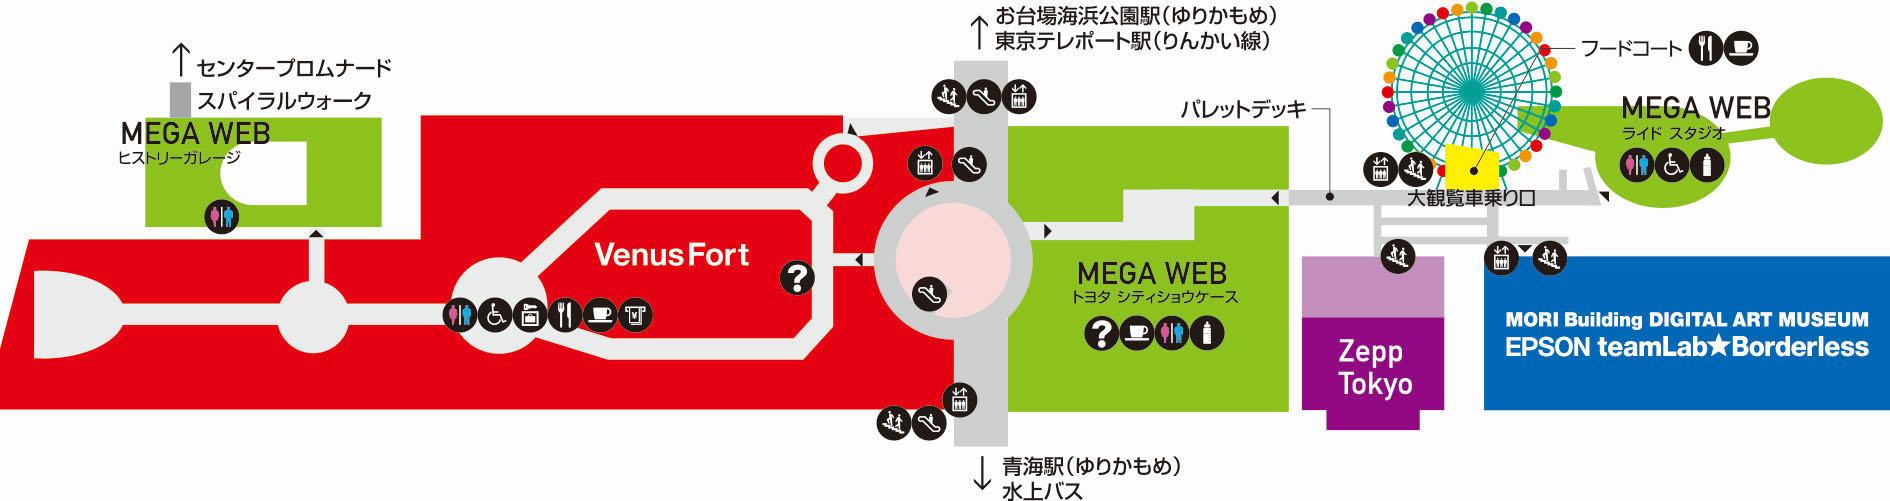 東京・青海のパレットタウンが2021年12月より順次終了発表……Zepp Tokyoや大観覧車など各施設営業終了予定日も公表1